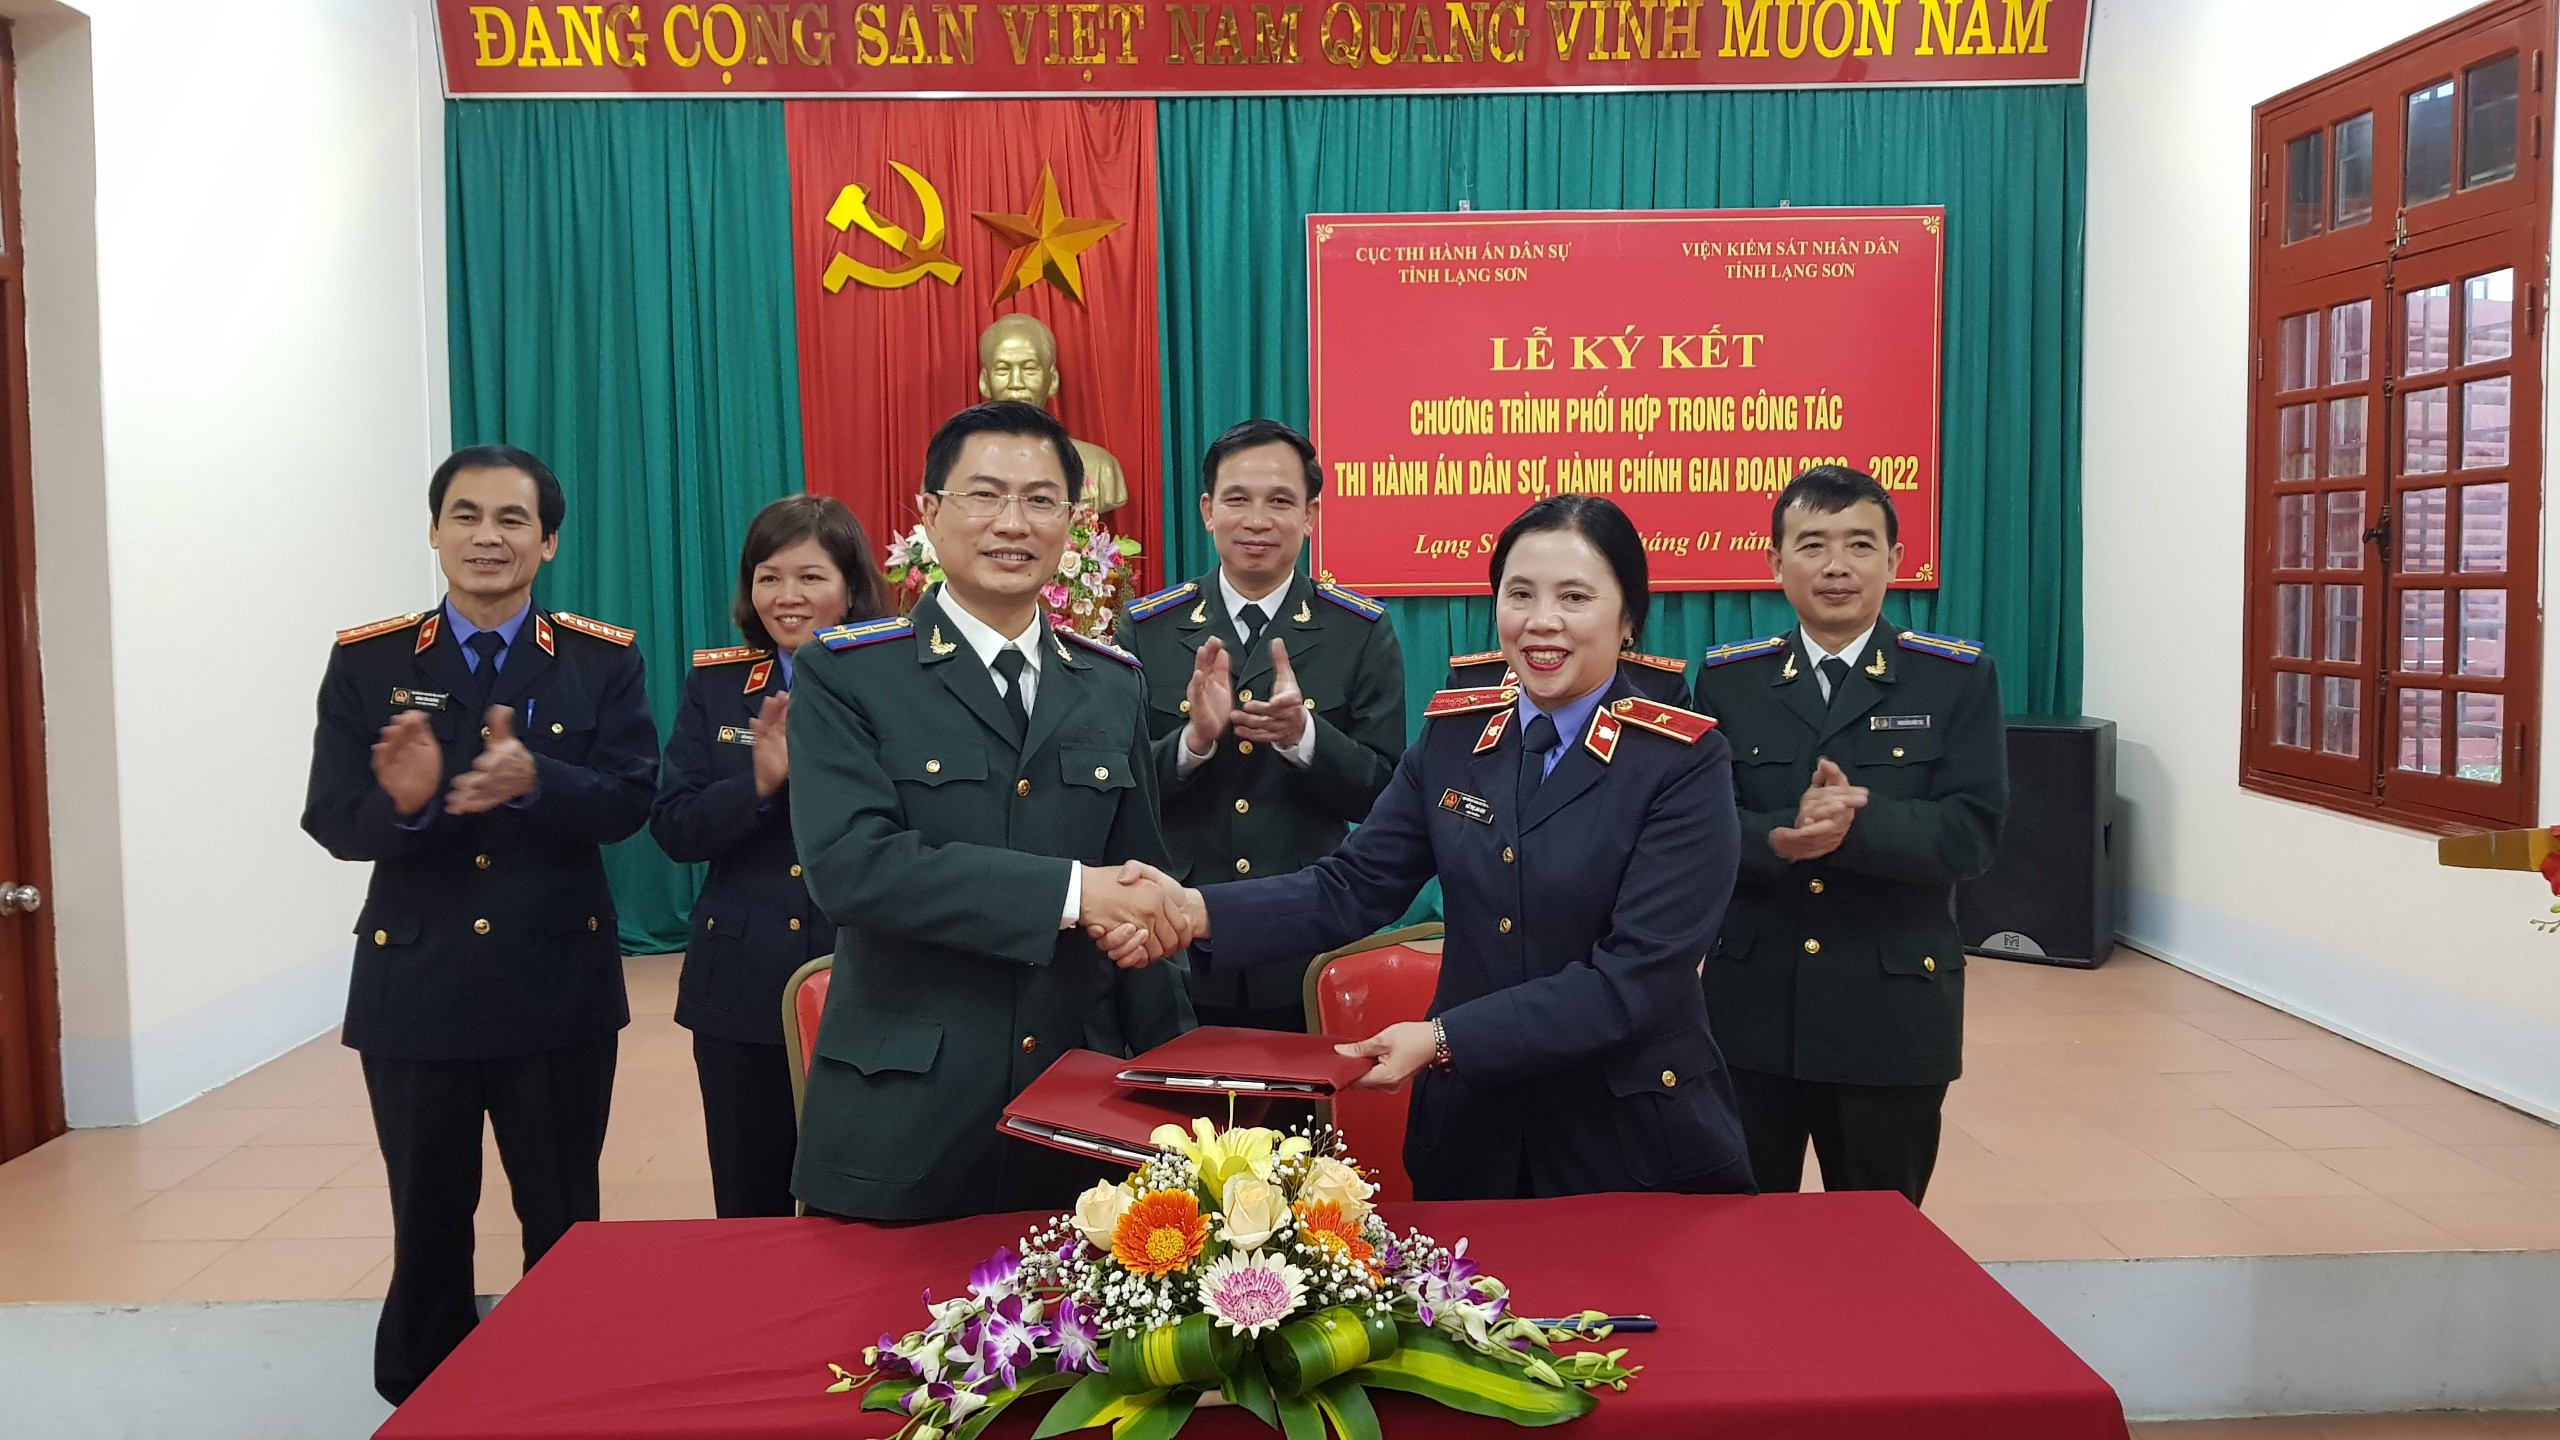 Cục Thi hành án dân sự và Viện kiểm sát nhân dân tỉnh Lạng Sơn tổ chức ký kết chương trình phối hợp trong công tác Thi hành án dân sự, hành chính giai đoạn 2020 – 2022